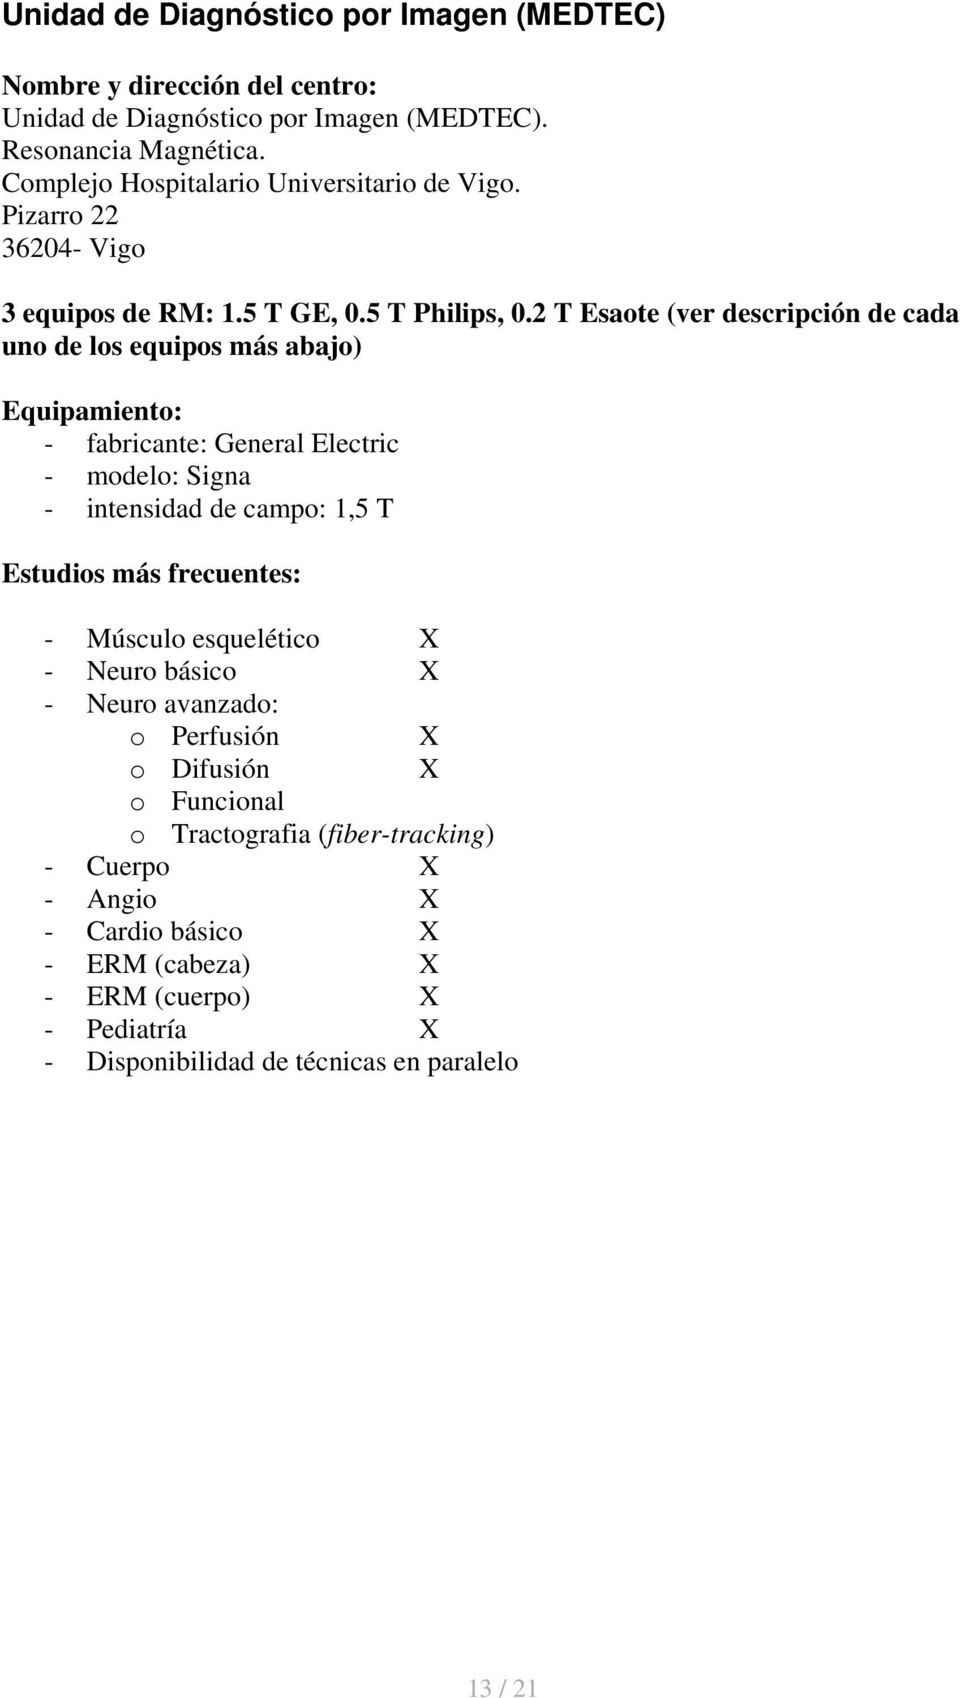 2 T Esaote (ver descripción de cada uno de los equipos más abajo) - fabricante: General Electric - modelo: Signa - intensidad de campo: 1,5 T - Músculo